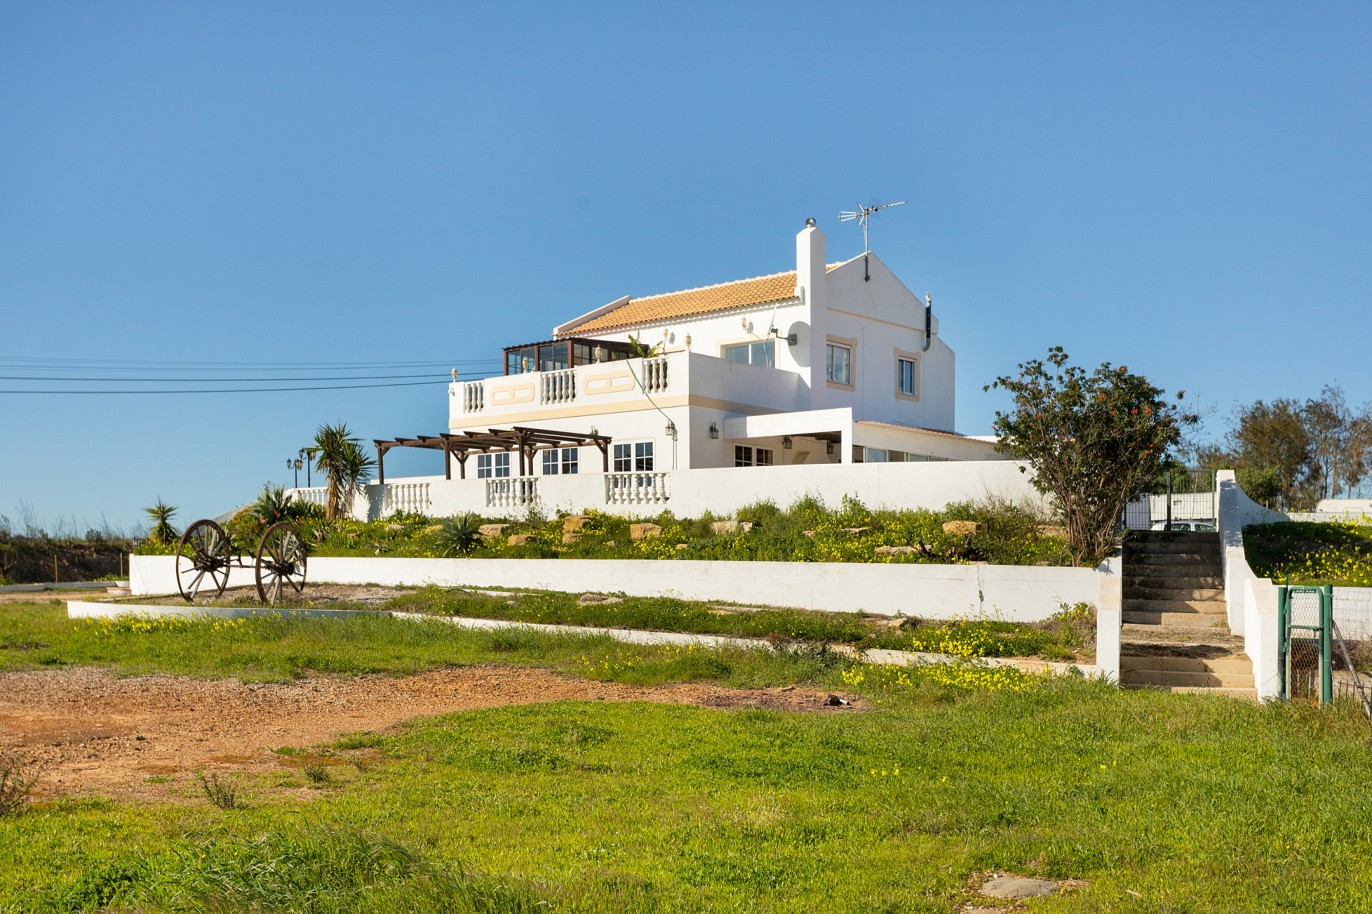 Moradia isolada com área comercial, para venda em Tavira, Algarve_215998